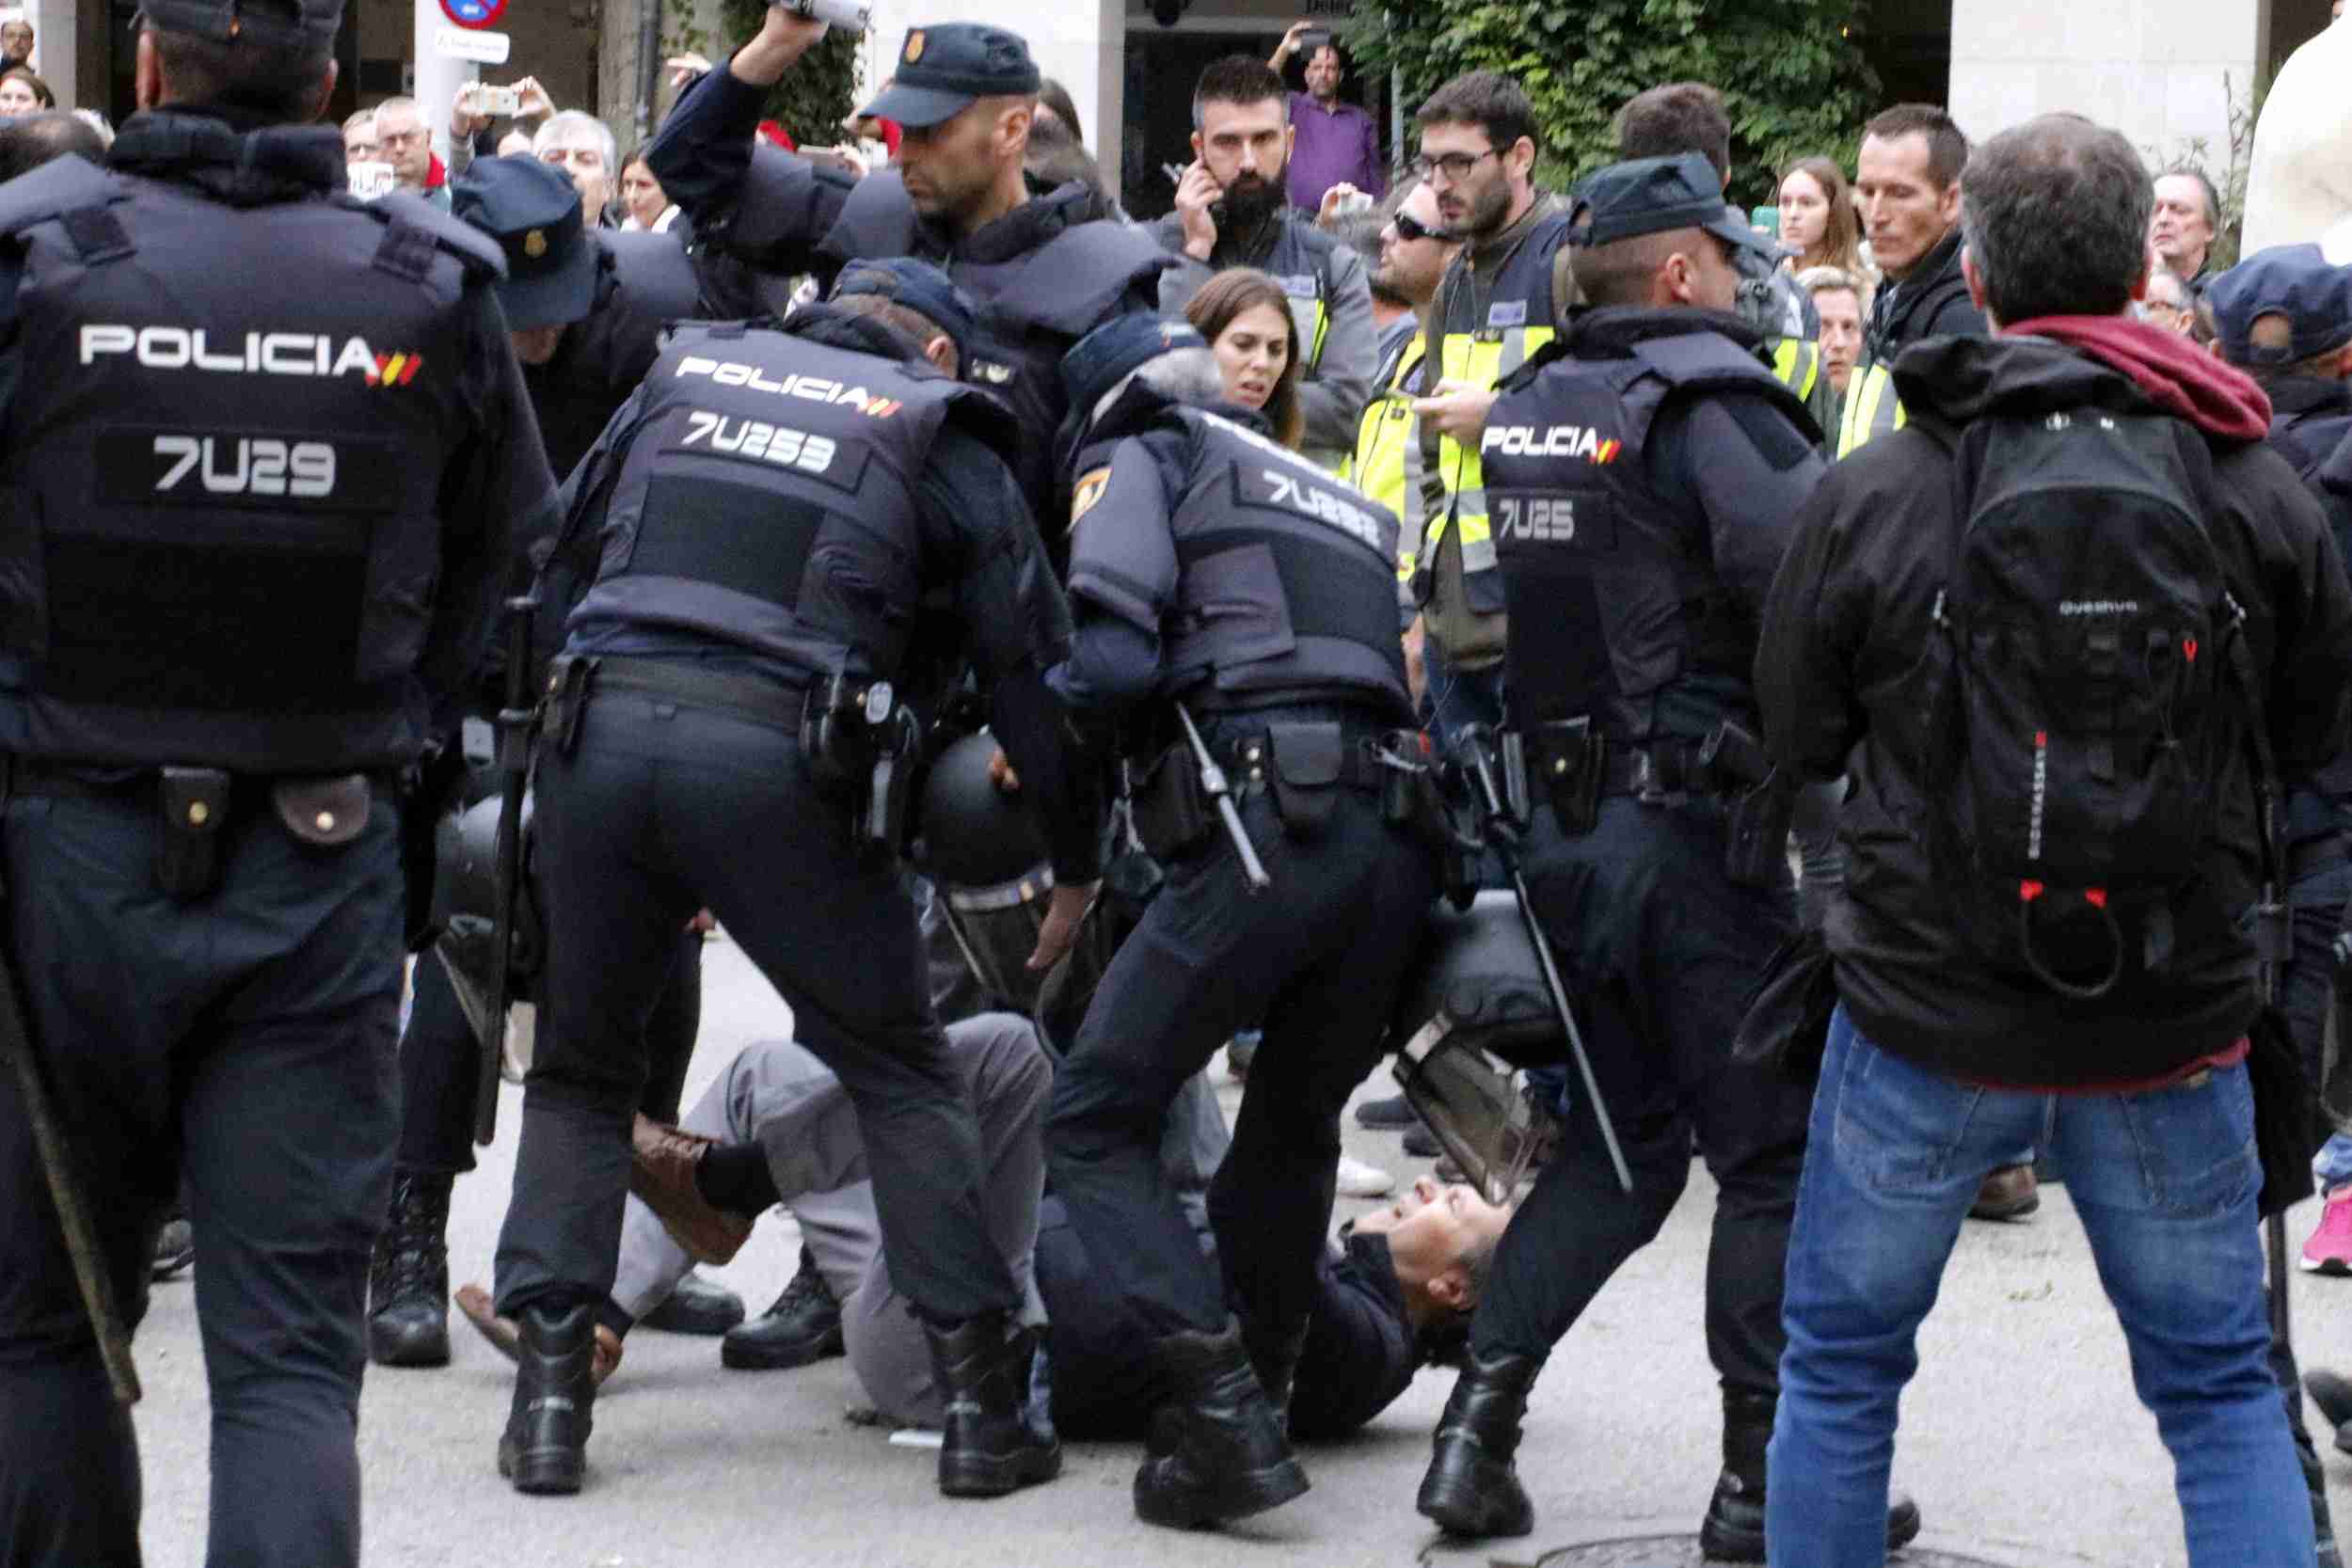 Dubtes policials en l’assalt a una escola: “Qui hagi dit que no hi ha resistència és subnormal”